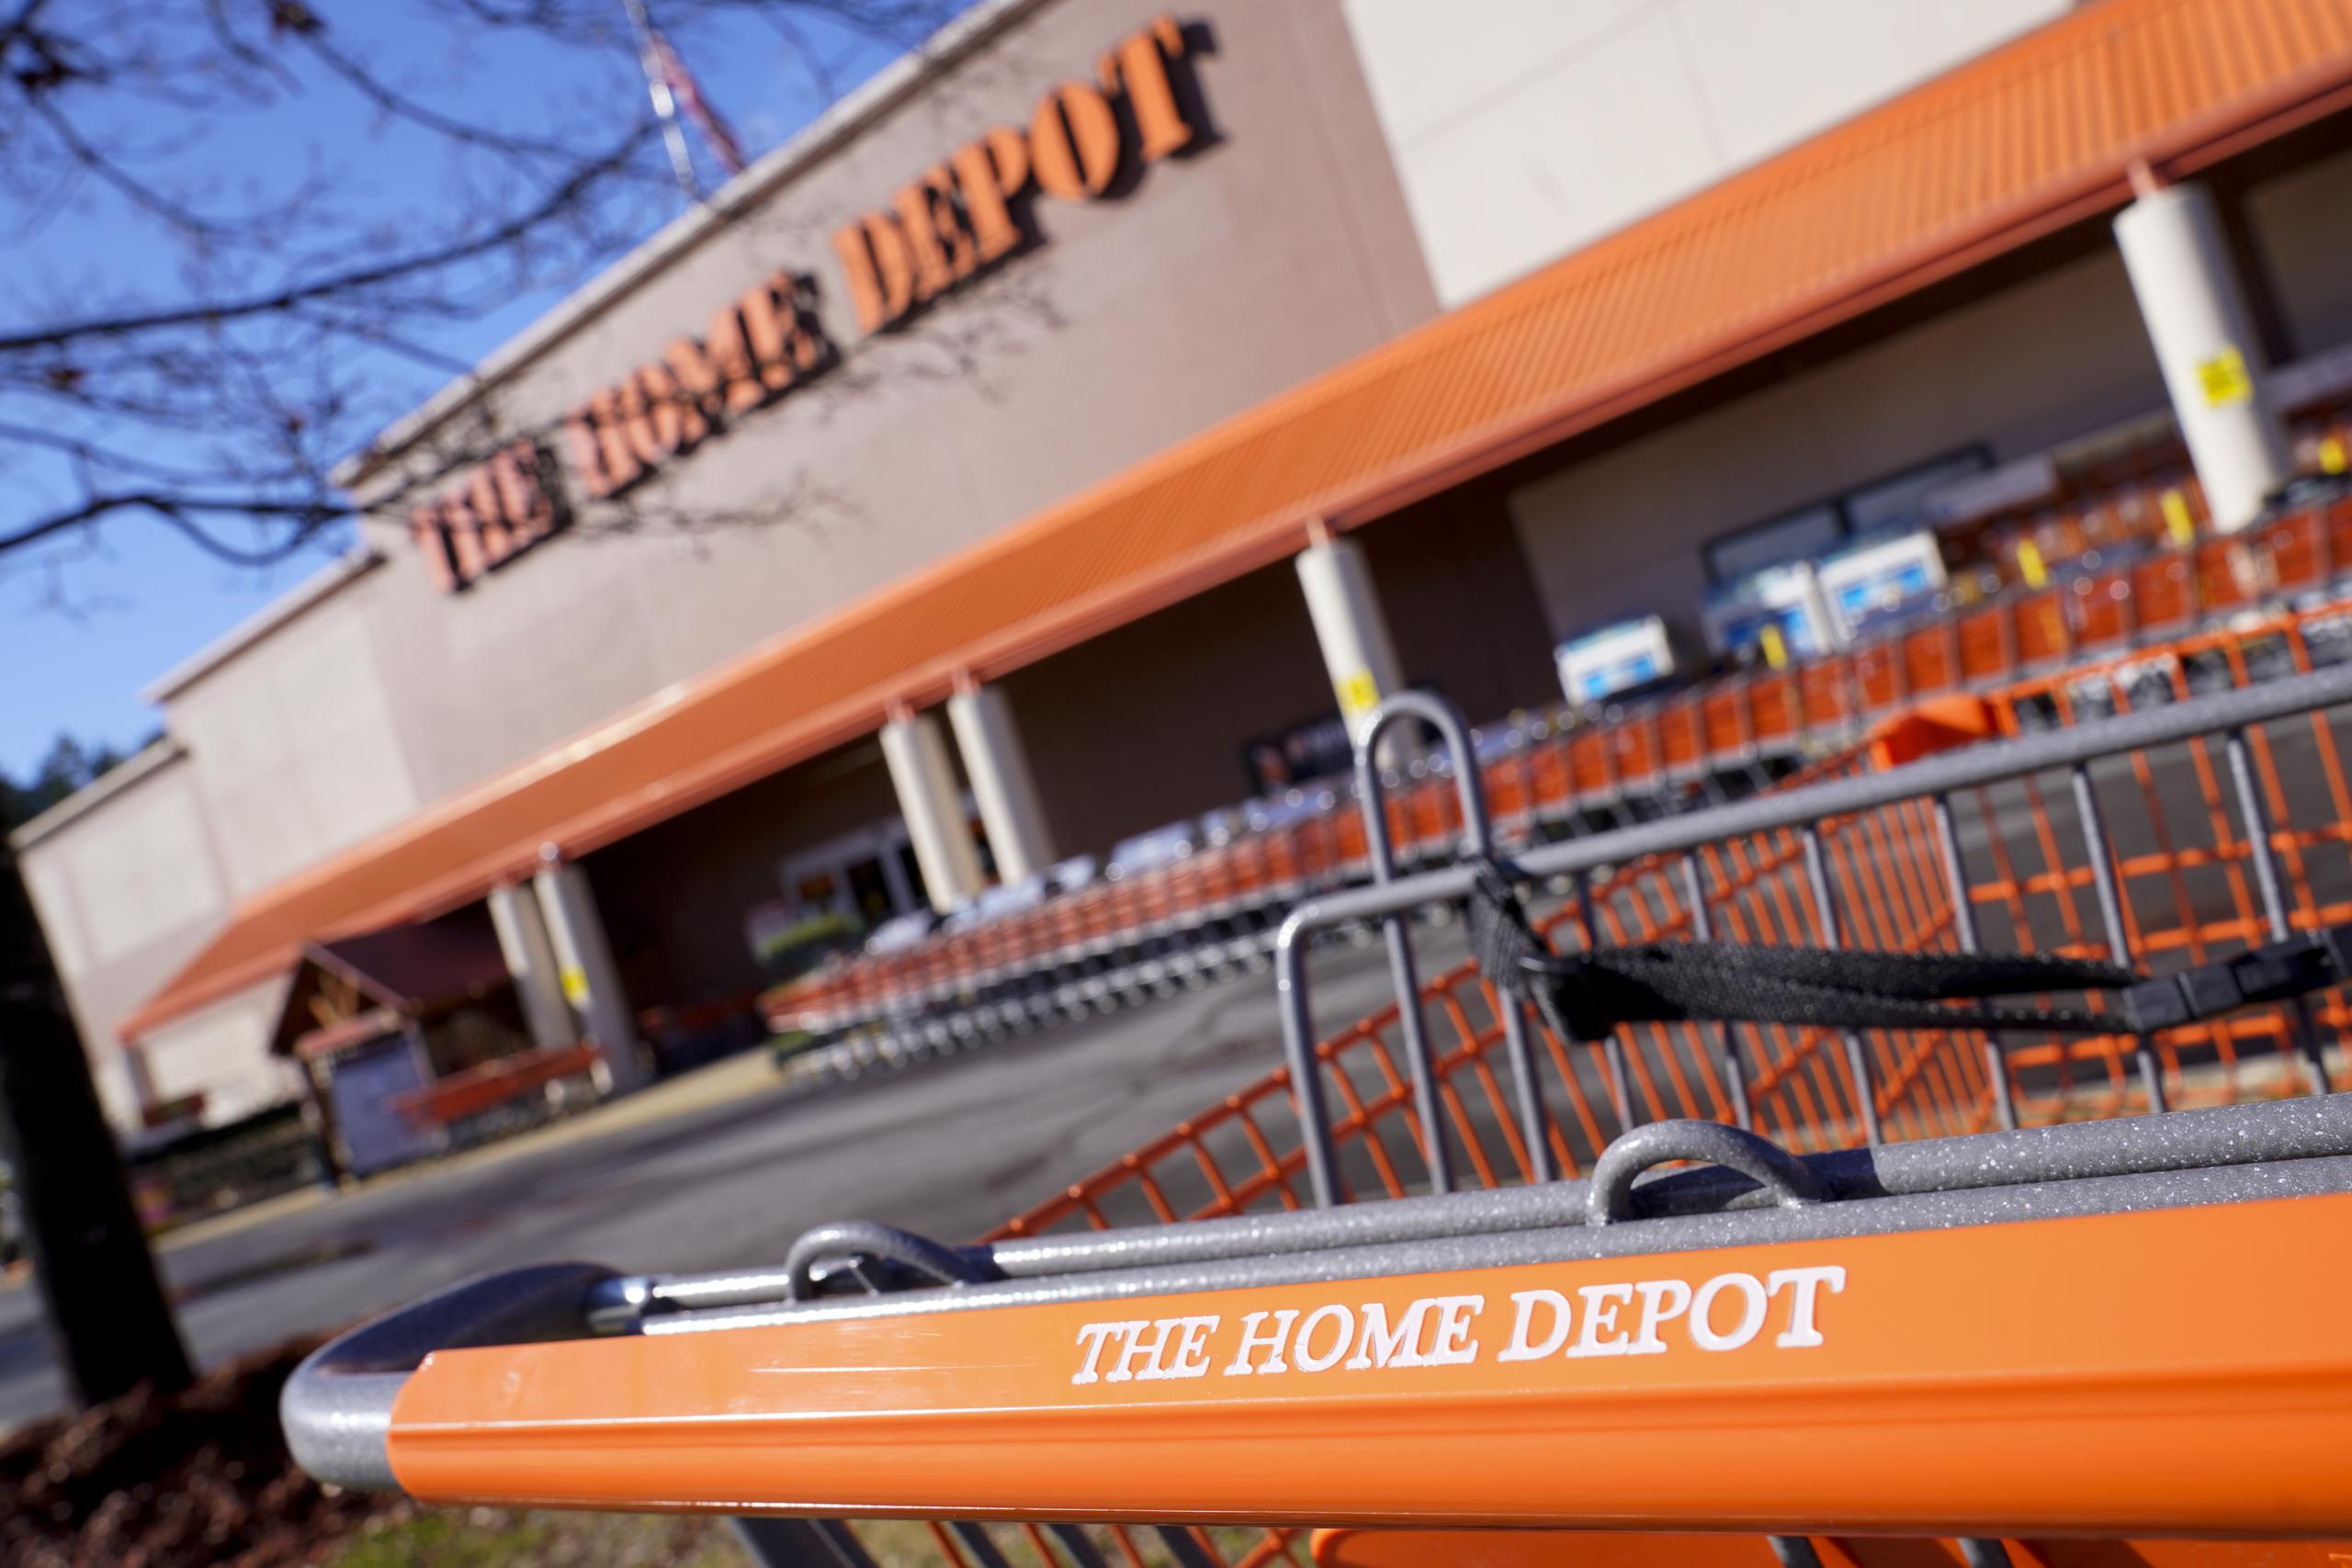 Las ventas en las tiendas de Home Depot en todo el mundo abiertas durante al menos un año subieron un 24.5%.